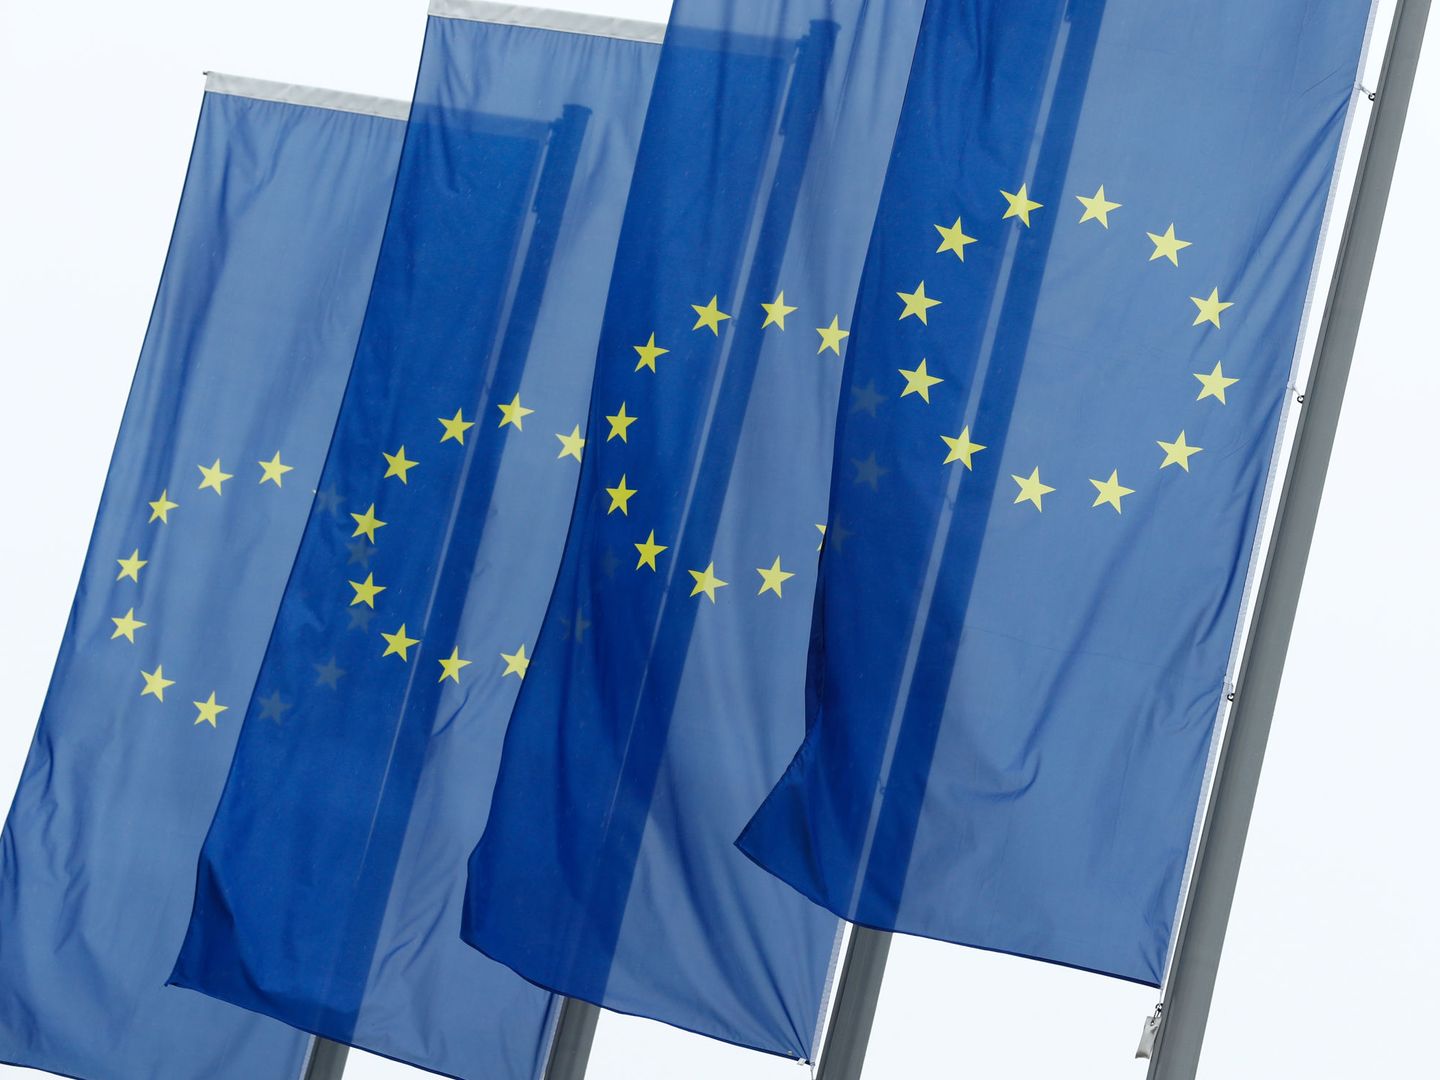 Banderas de la Unión Europea. (Reuters)